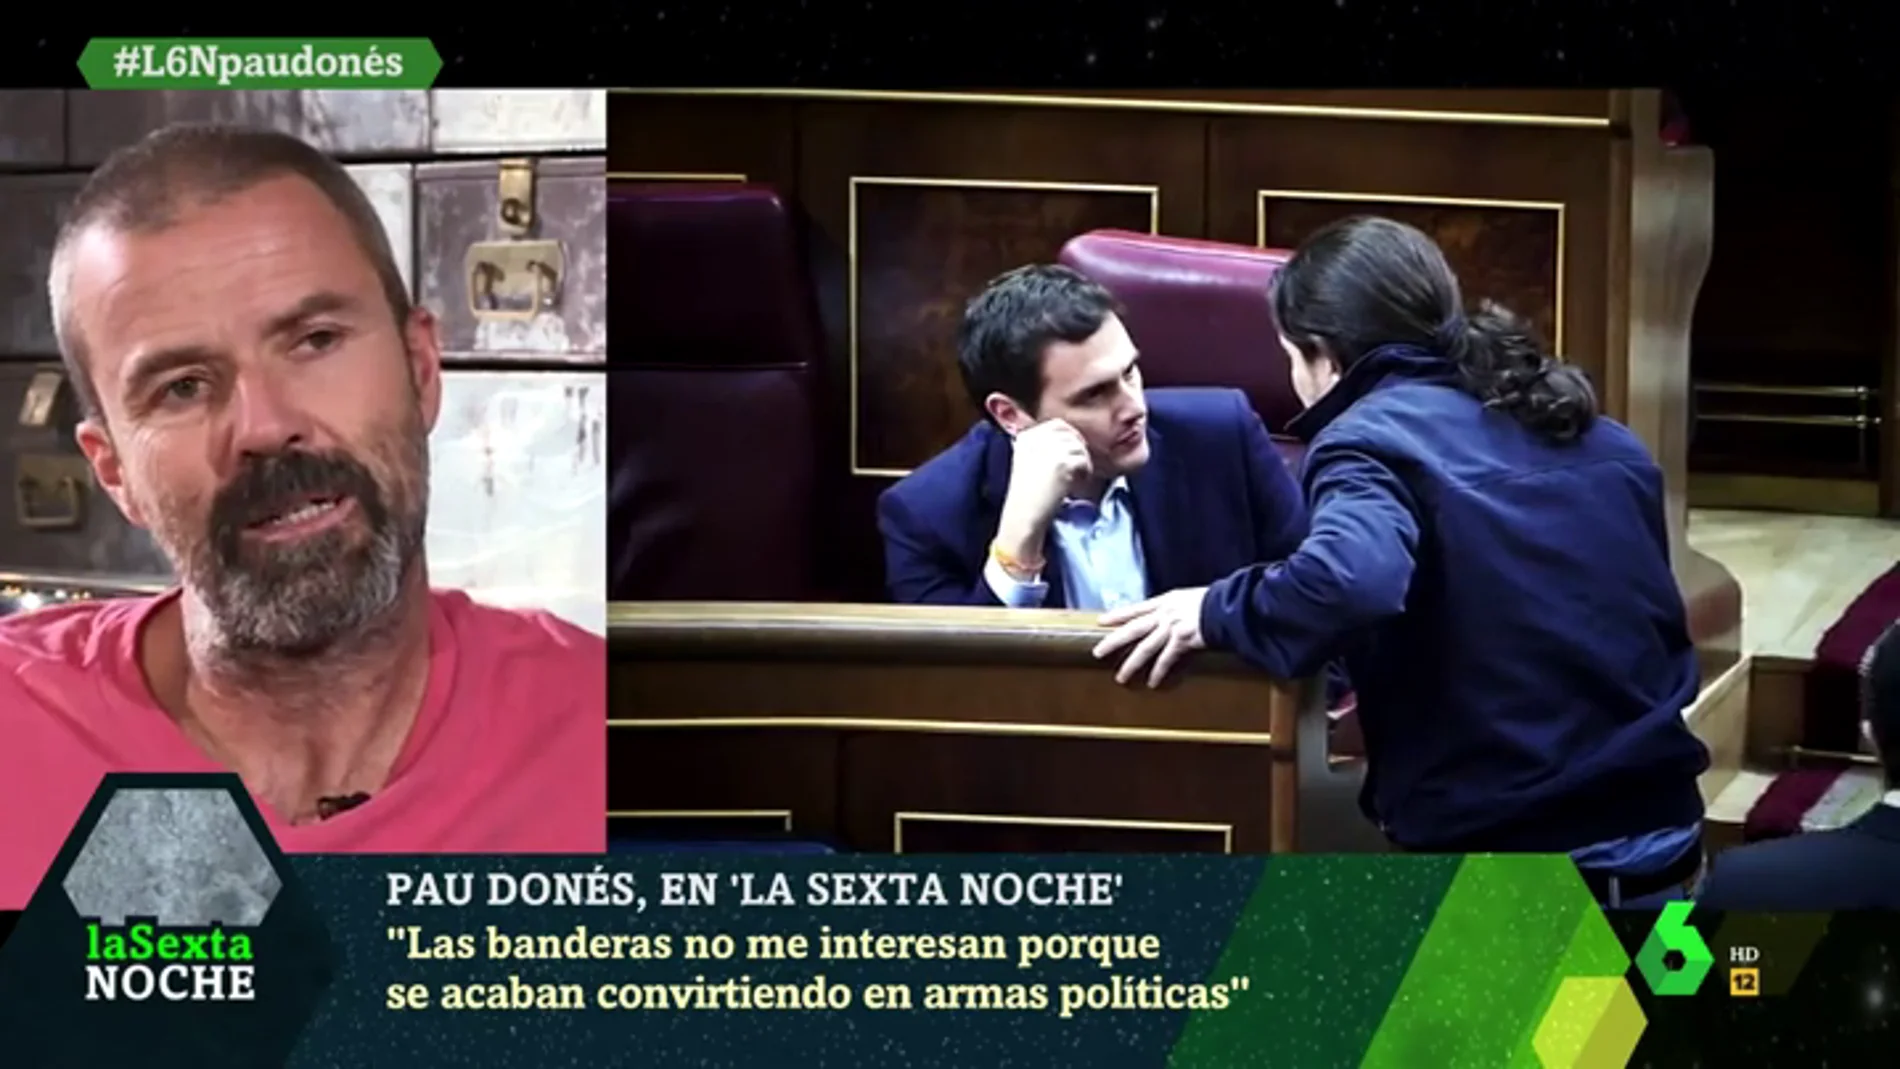 Pau Donés confiesa que Albert Rivera, Pedro Sánchez y Pablo Iglesias le ilusionaron cuando accedieron a la política